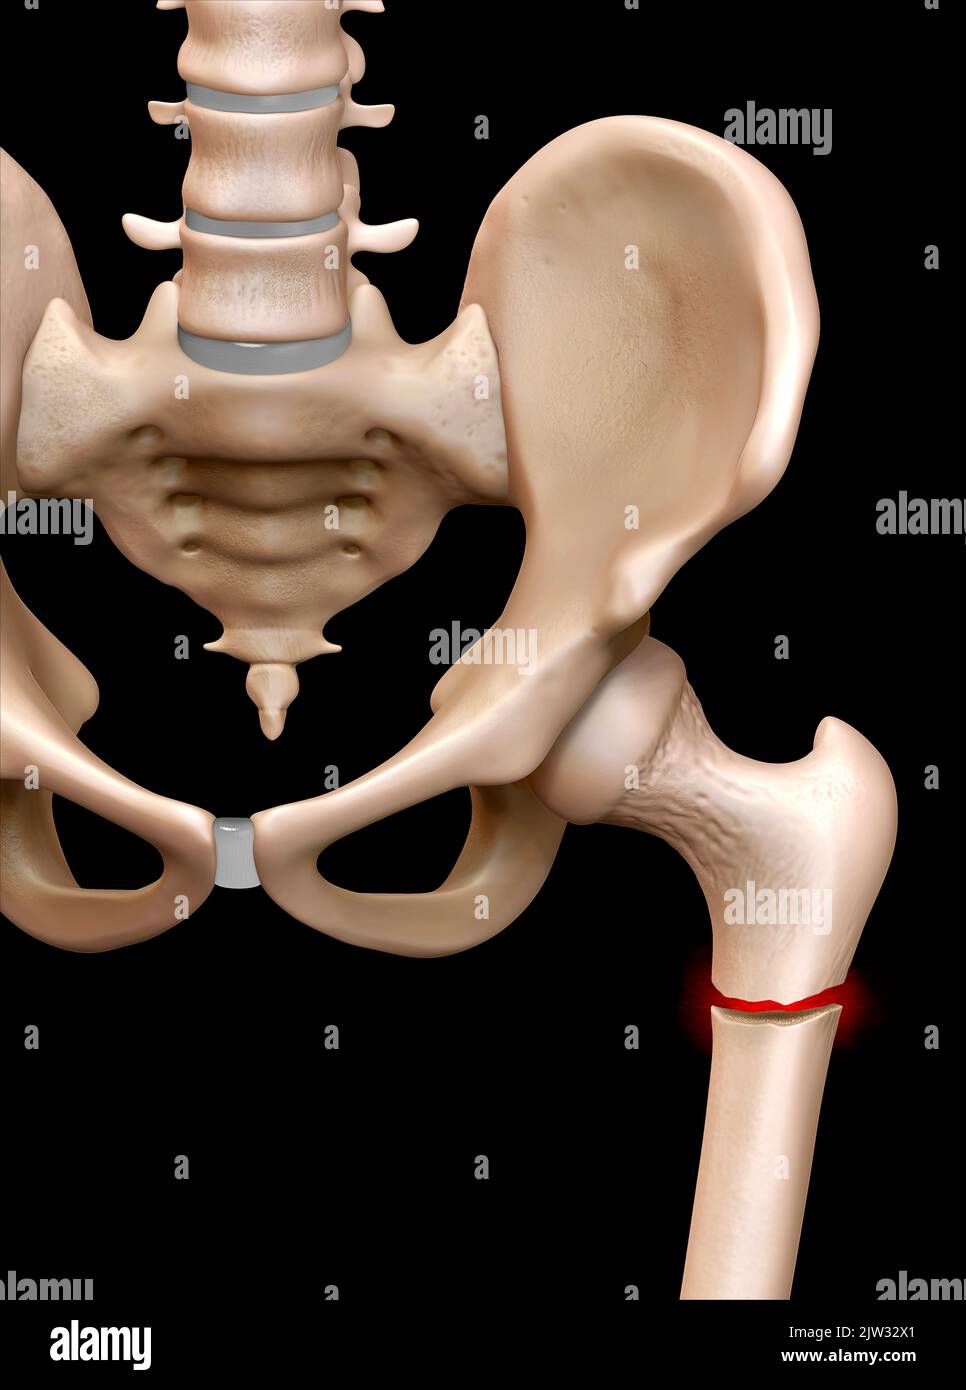 Immagine che mostra una frattura nel collo del femore (osso della coscia). Foto Stock